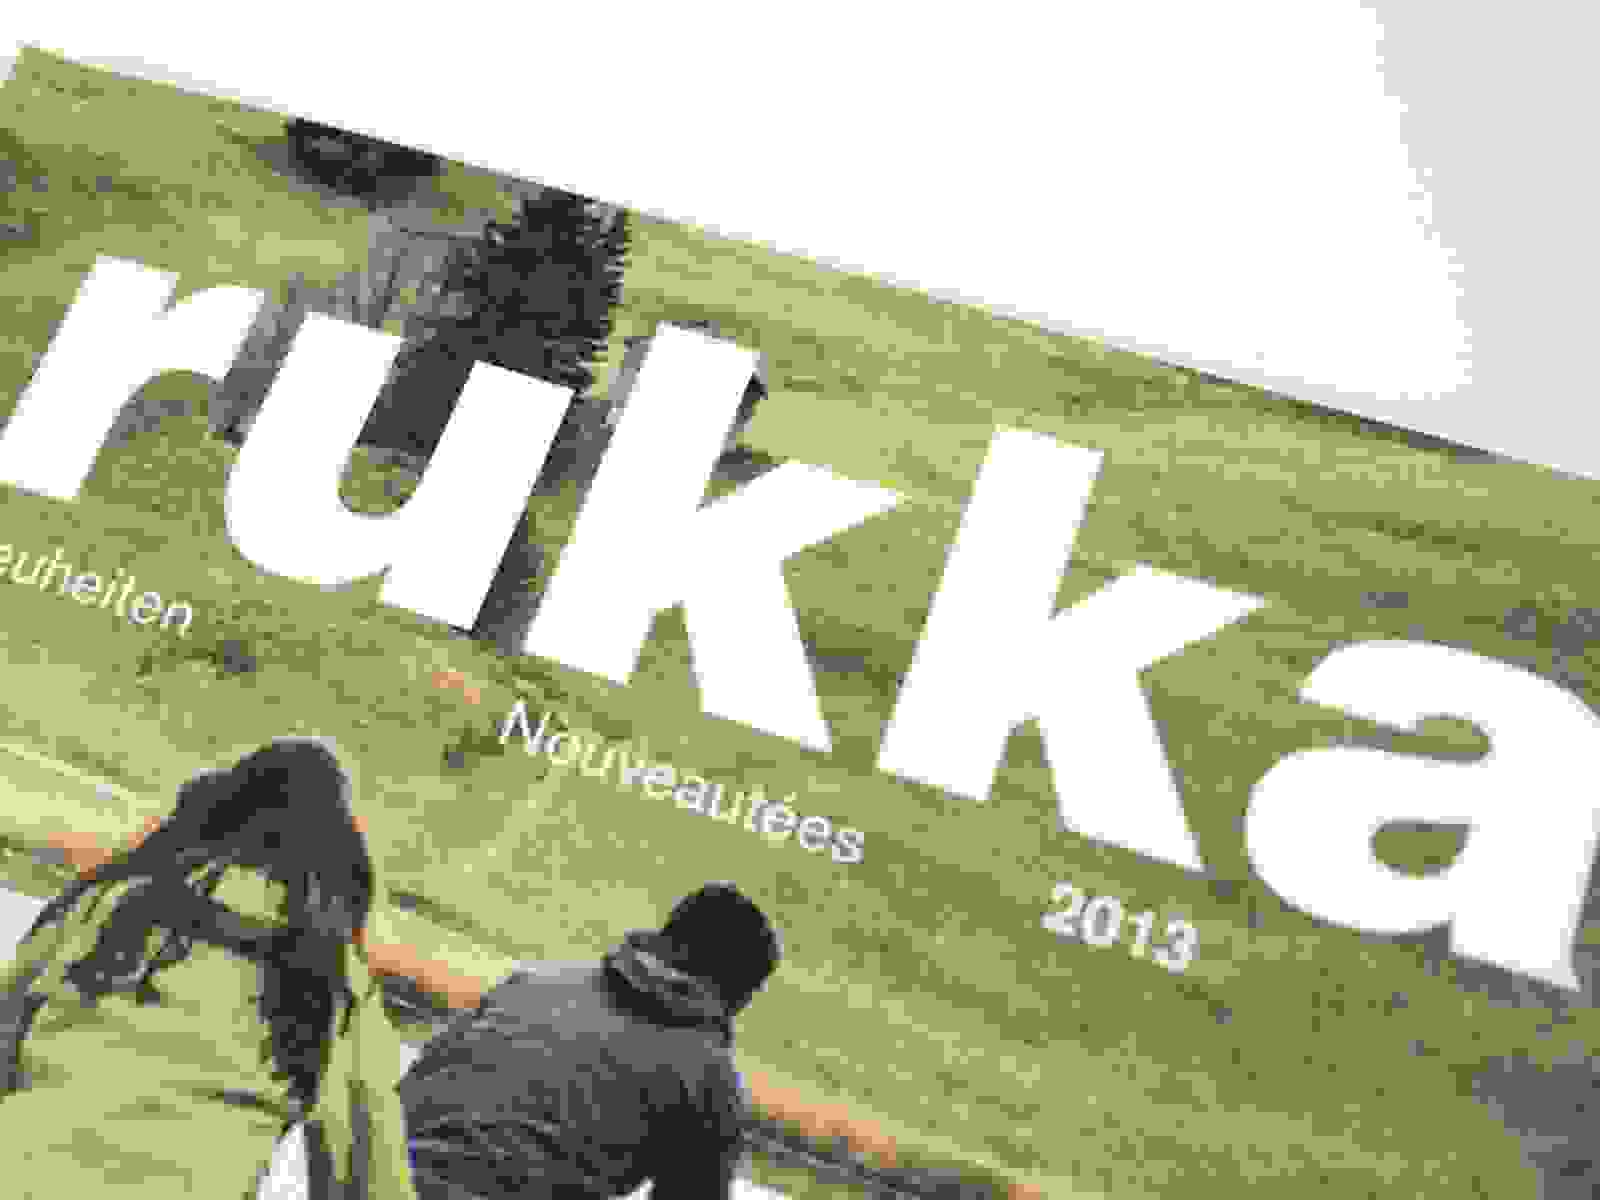 Neuheiten und Jahreskatalog 2012/13 von rukka